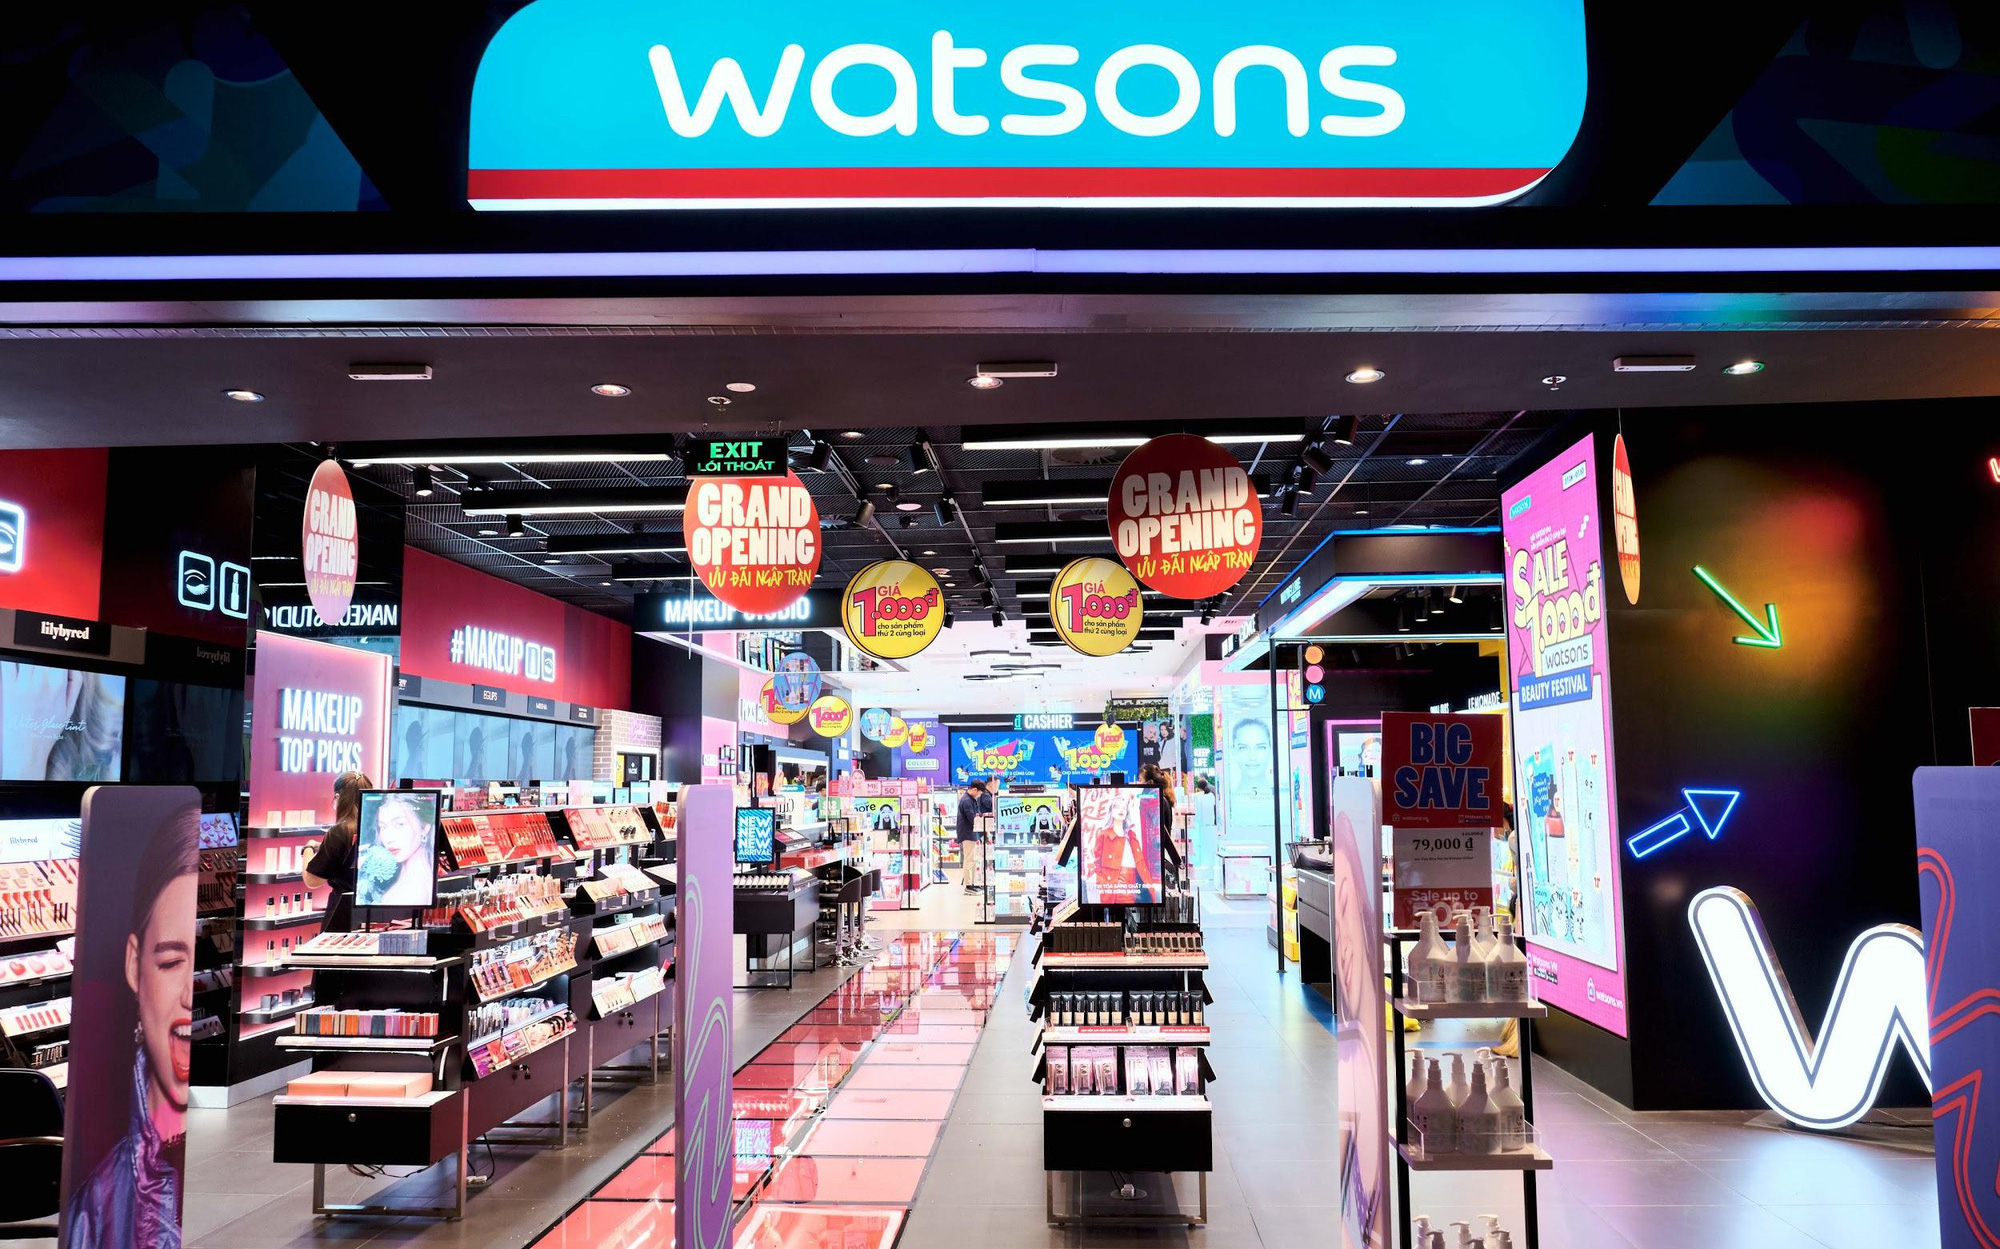 “Hạ cánh” ở Vincom Đồng Khởi, Watsons khai trương cửa hàng Flagship cực xịn xò